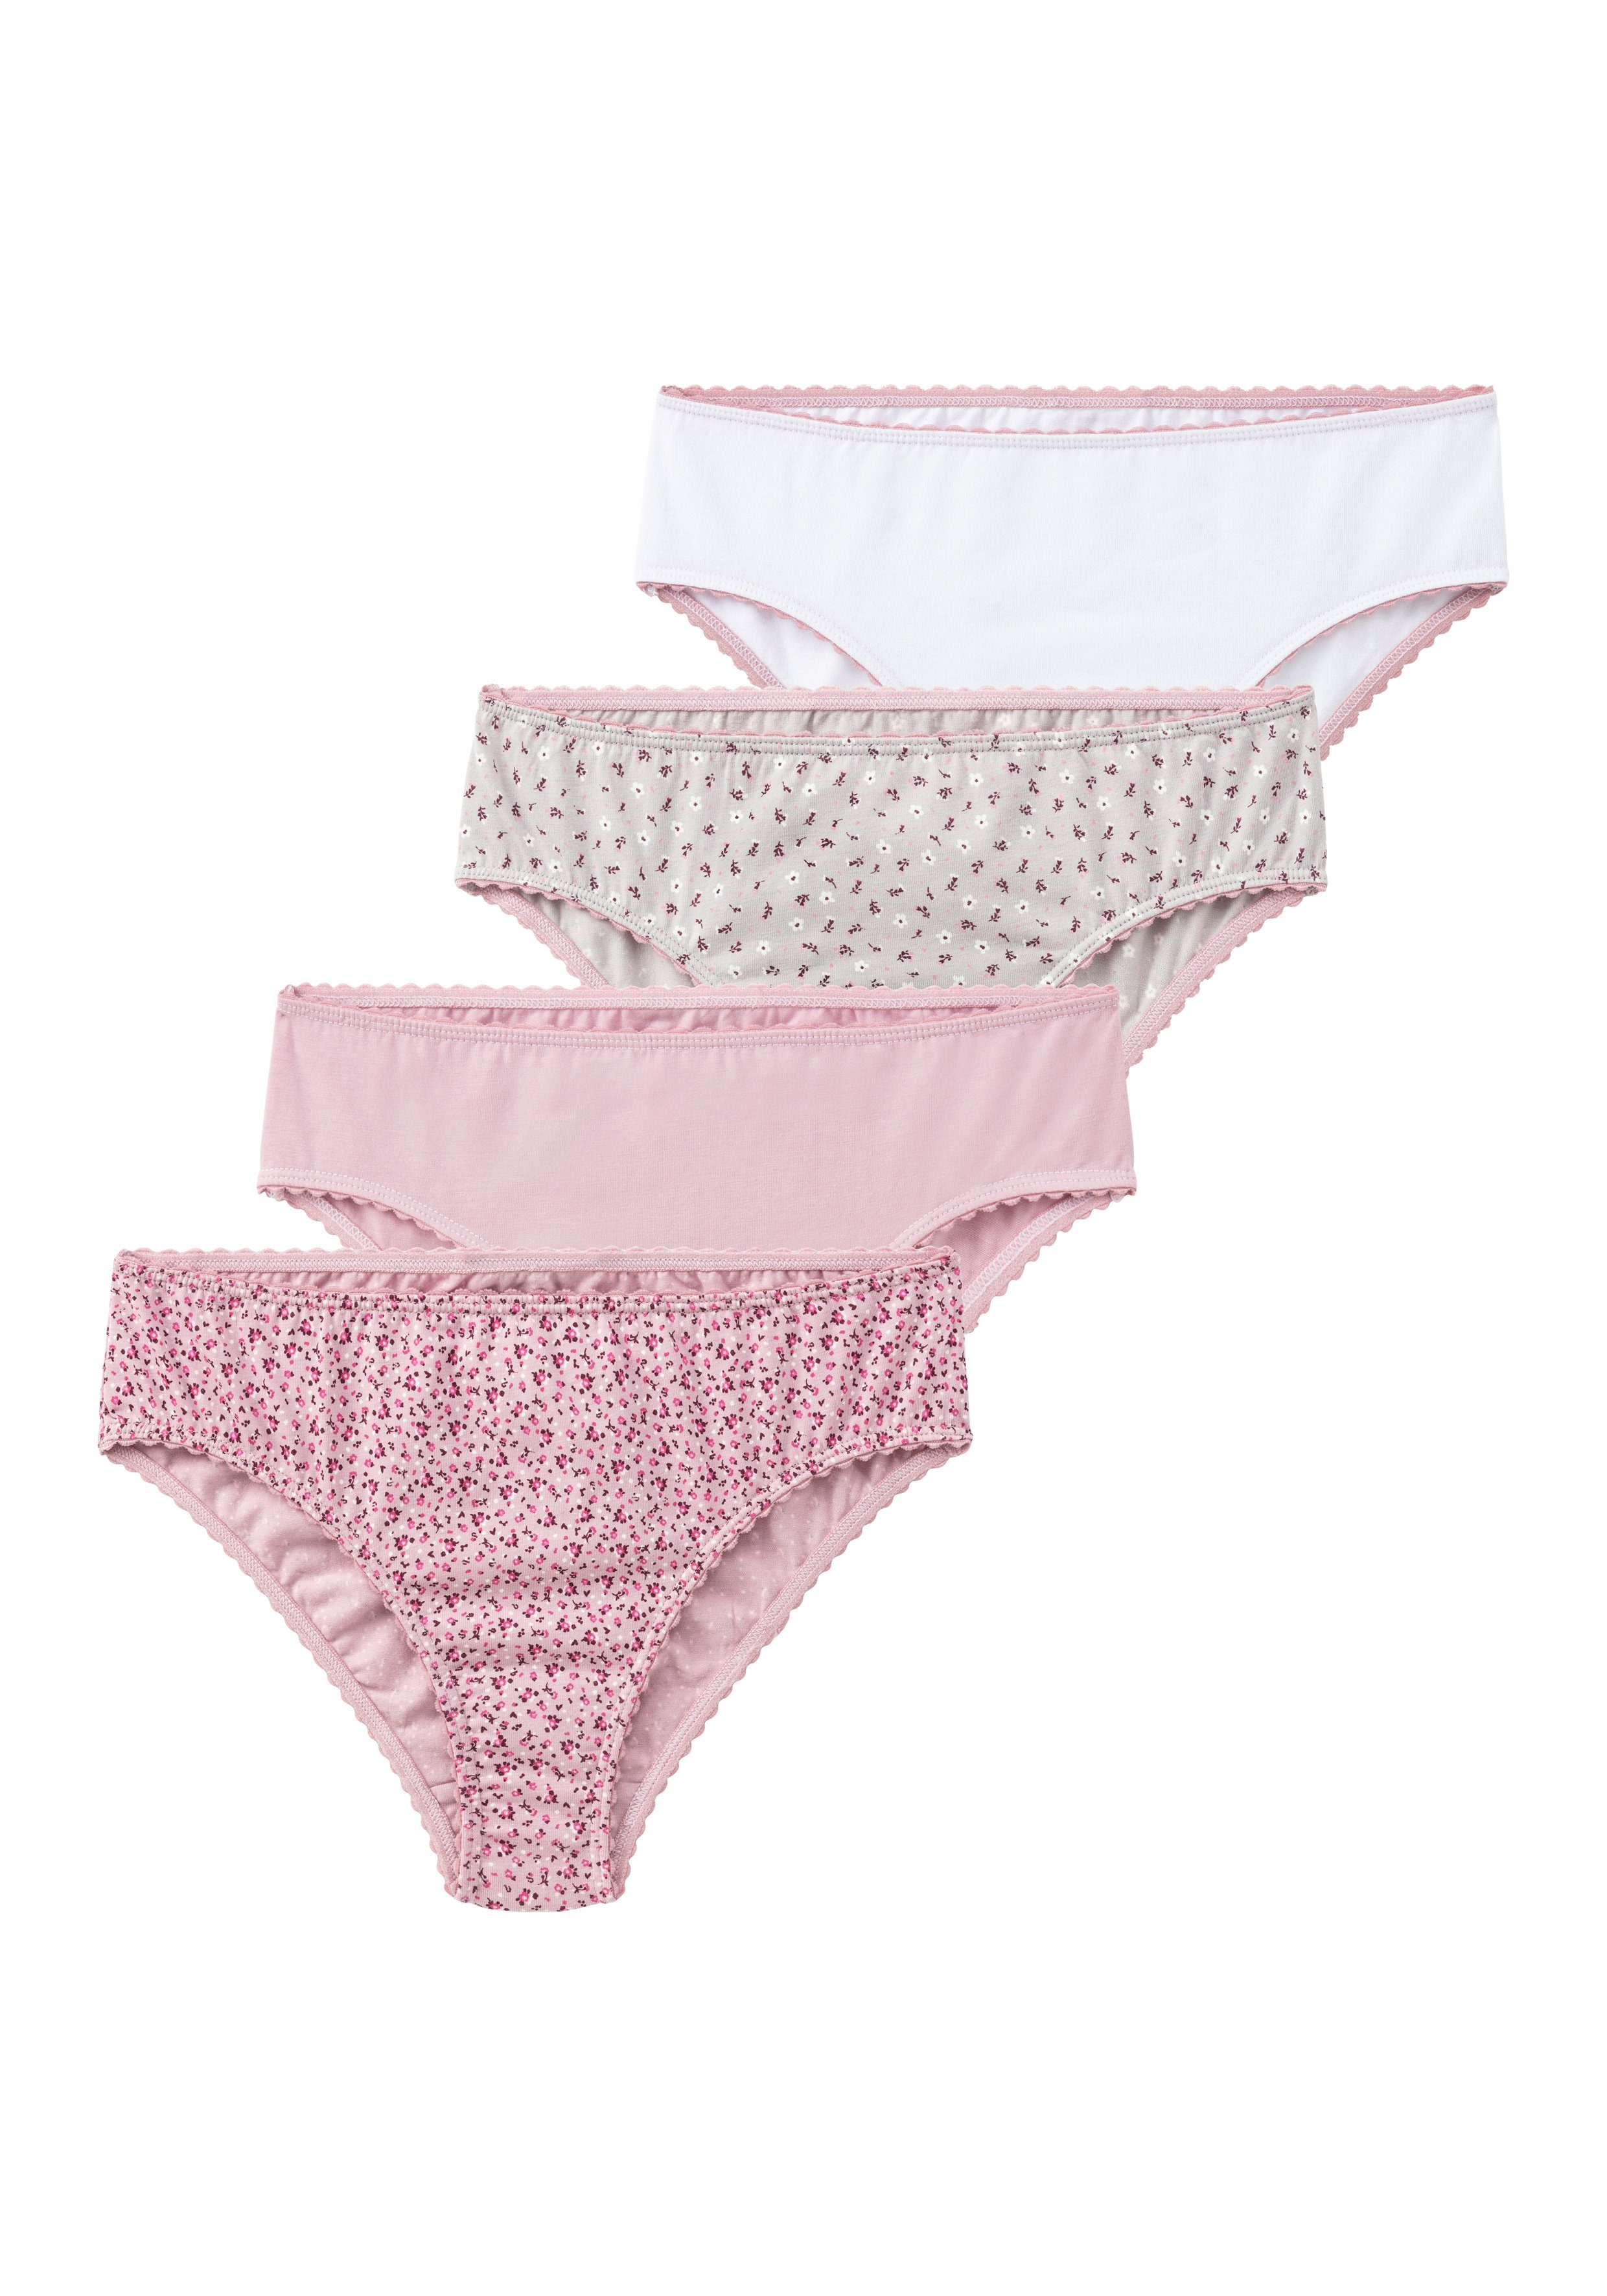 weiß-uni Millefleur-Design + Slip Packung (Packung, Uni grau-geblümt, in rosa-geblümt, einer Vivance 4-St) rosa-uni,